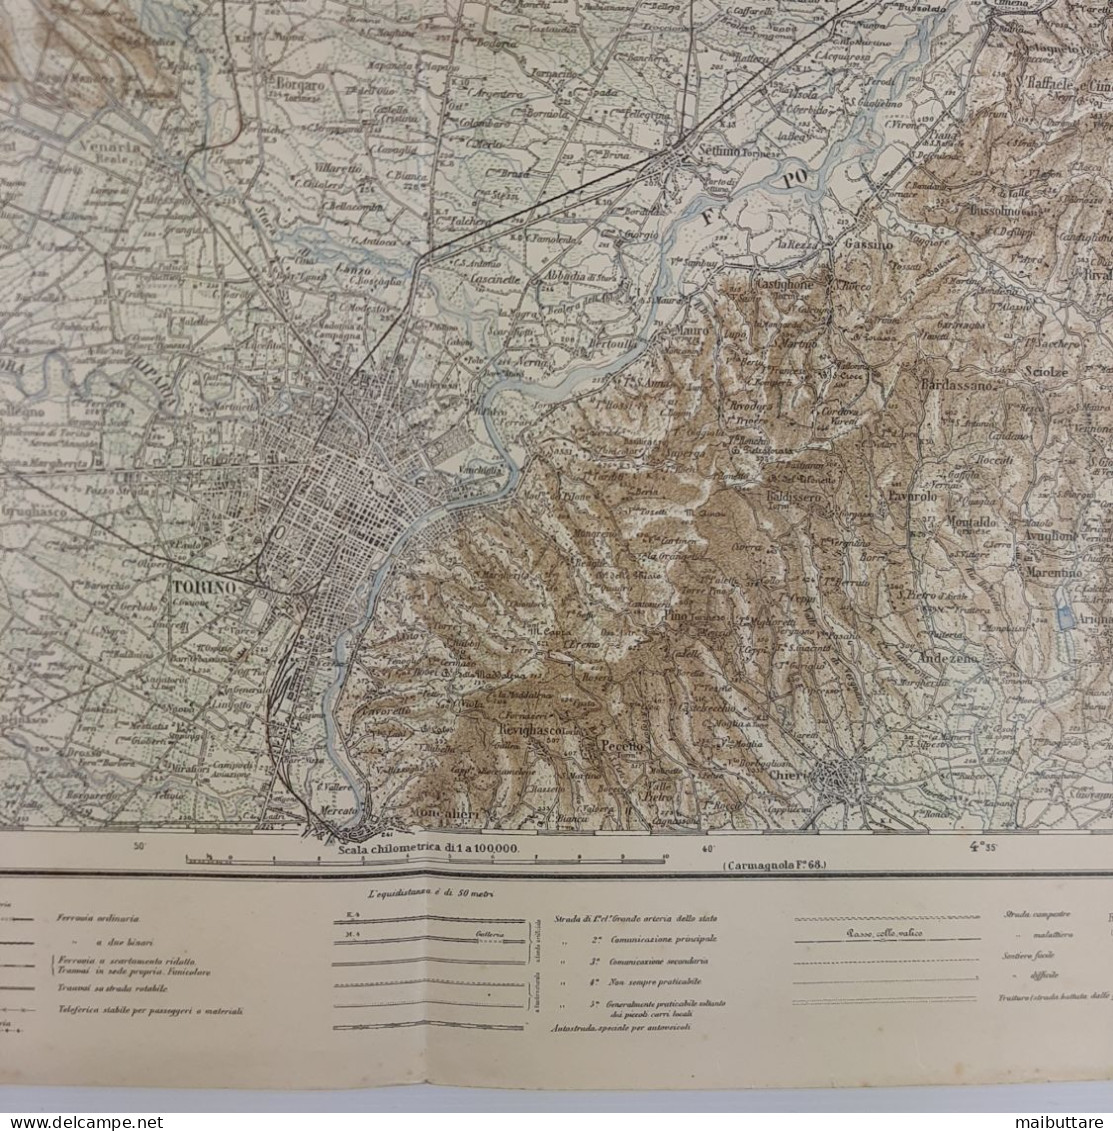 Carta Geografica, Cartina Mappa Militare Torino Piemonte F56 Della Carta D'Italia Scala 1:25.000 - Mapas Geográficas